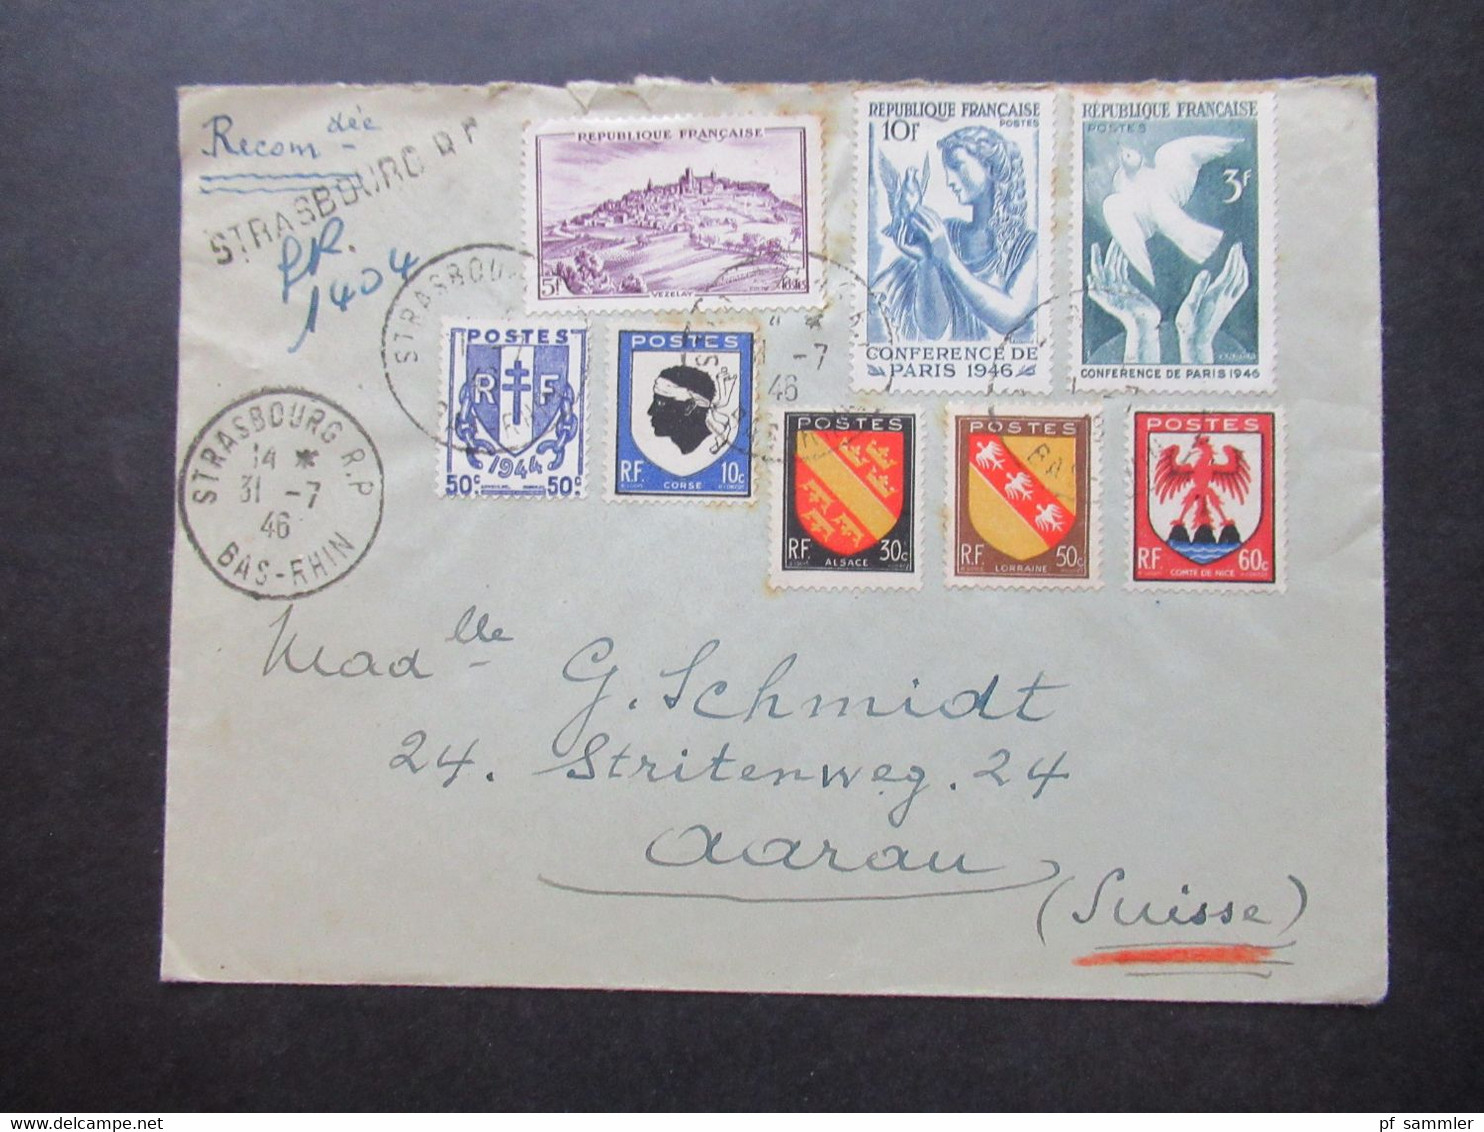 Frankreich 1946 MiF Einschreiben Reco Strasbourg R.P. Nach Aarau Schweiz Mit Ank. Stempel Aarau 1 Briefe - Storia Postale